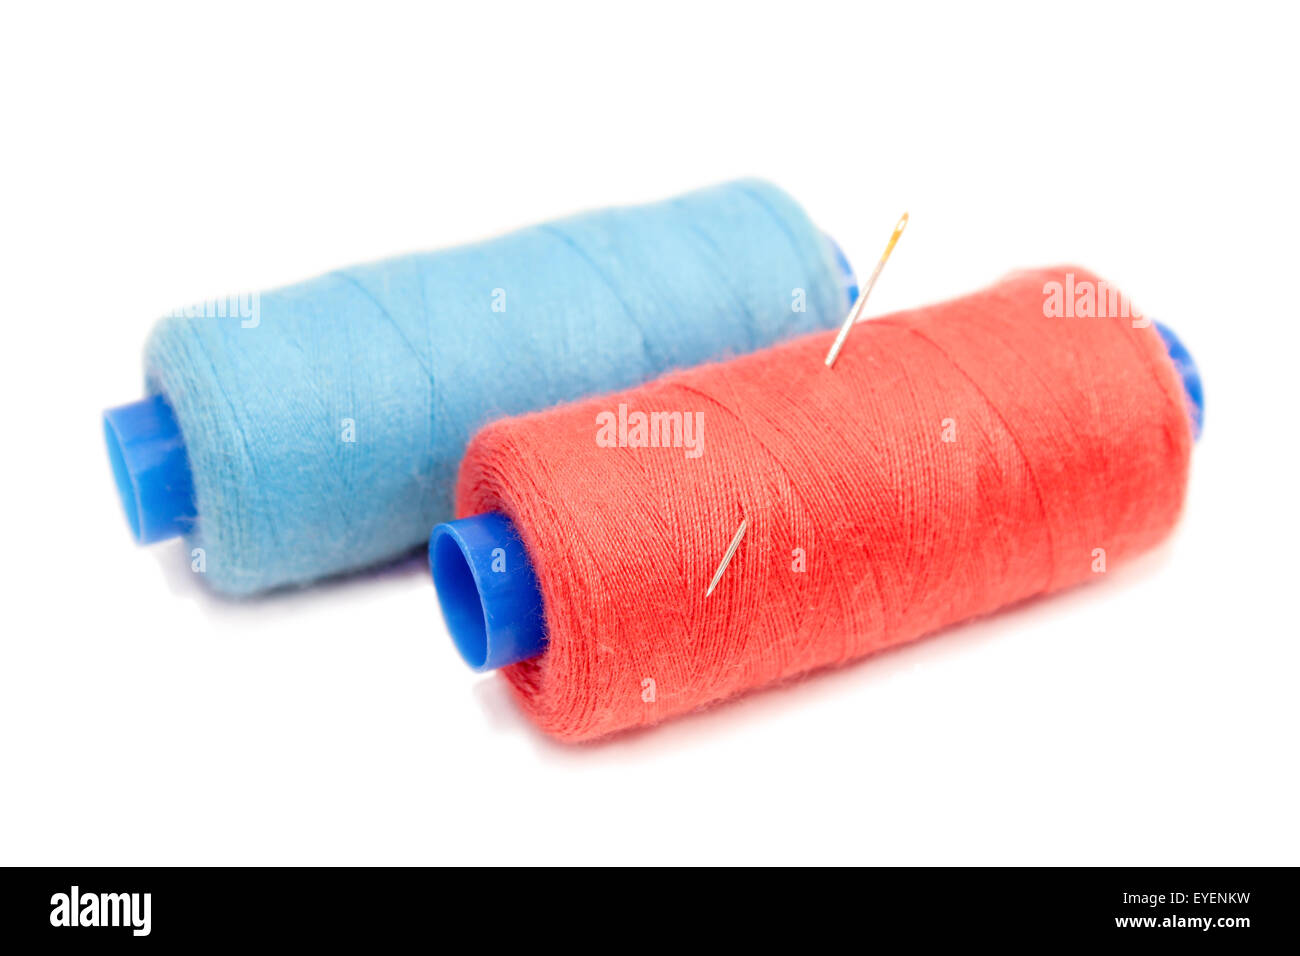 Bobines de fils à coudre de bleu et rouge, avec eux coincé dans une aiguille à coudre isolé sur fond blanc. Banque D'Images